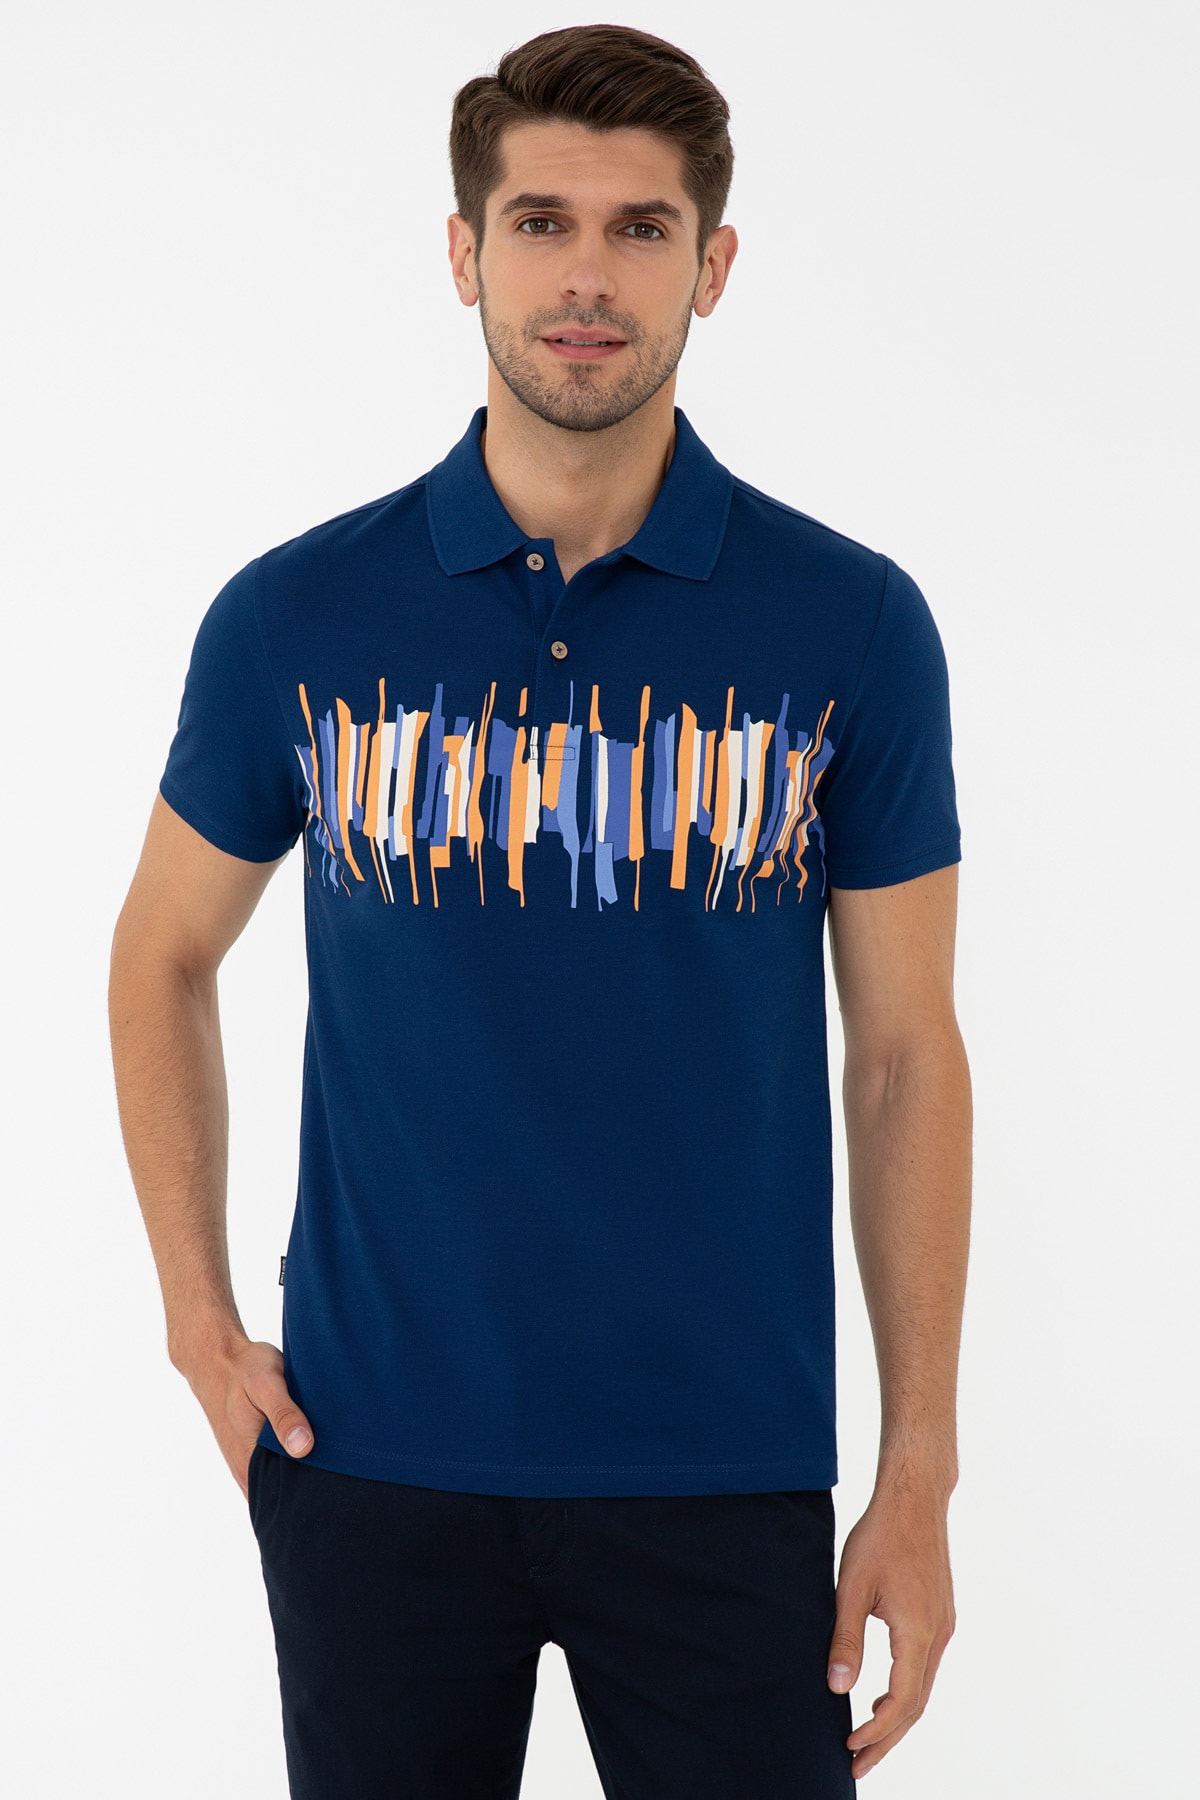 Pierre Cardin T-shirt, 2xl, Lacivert PG6001